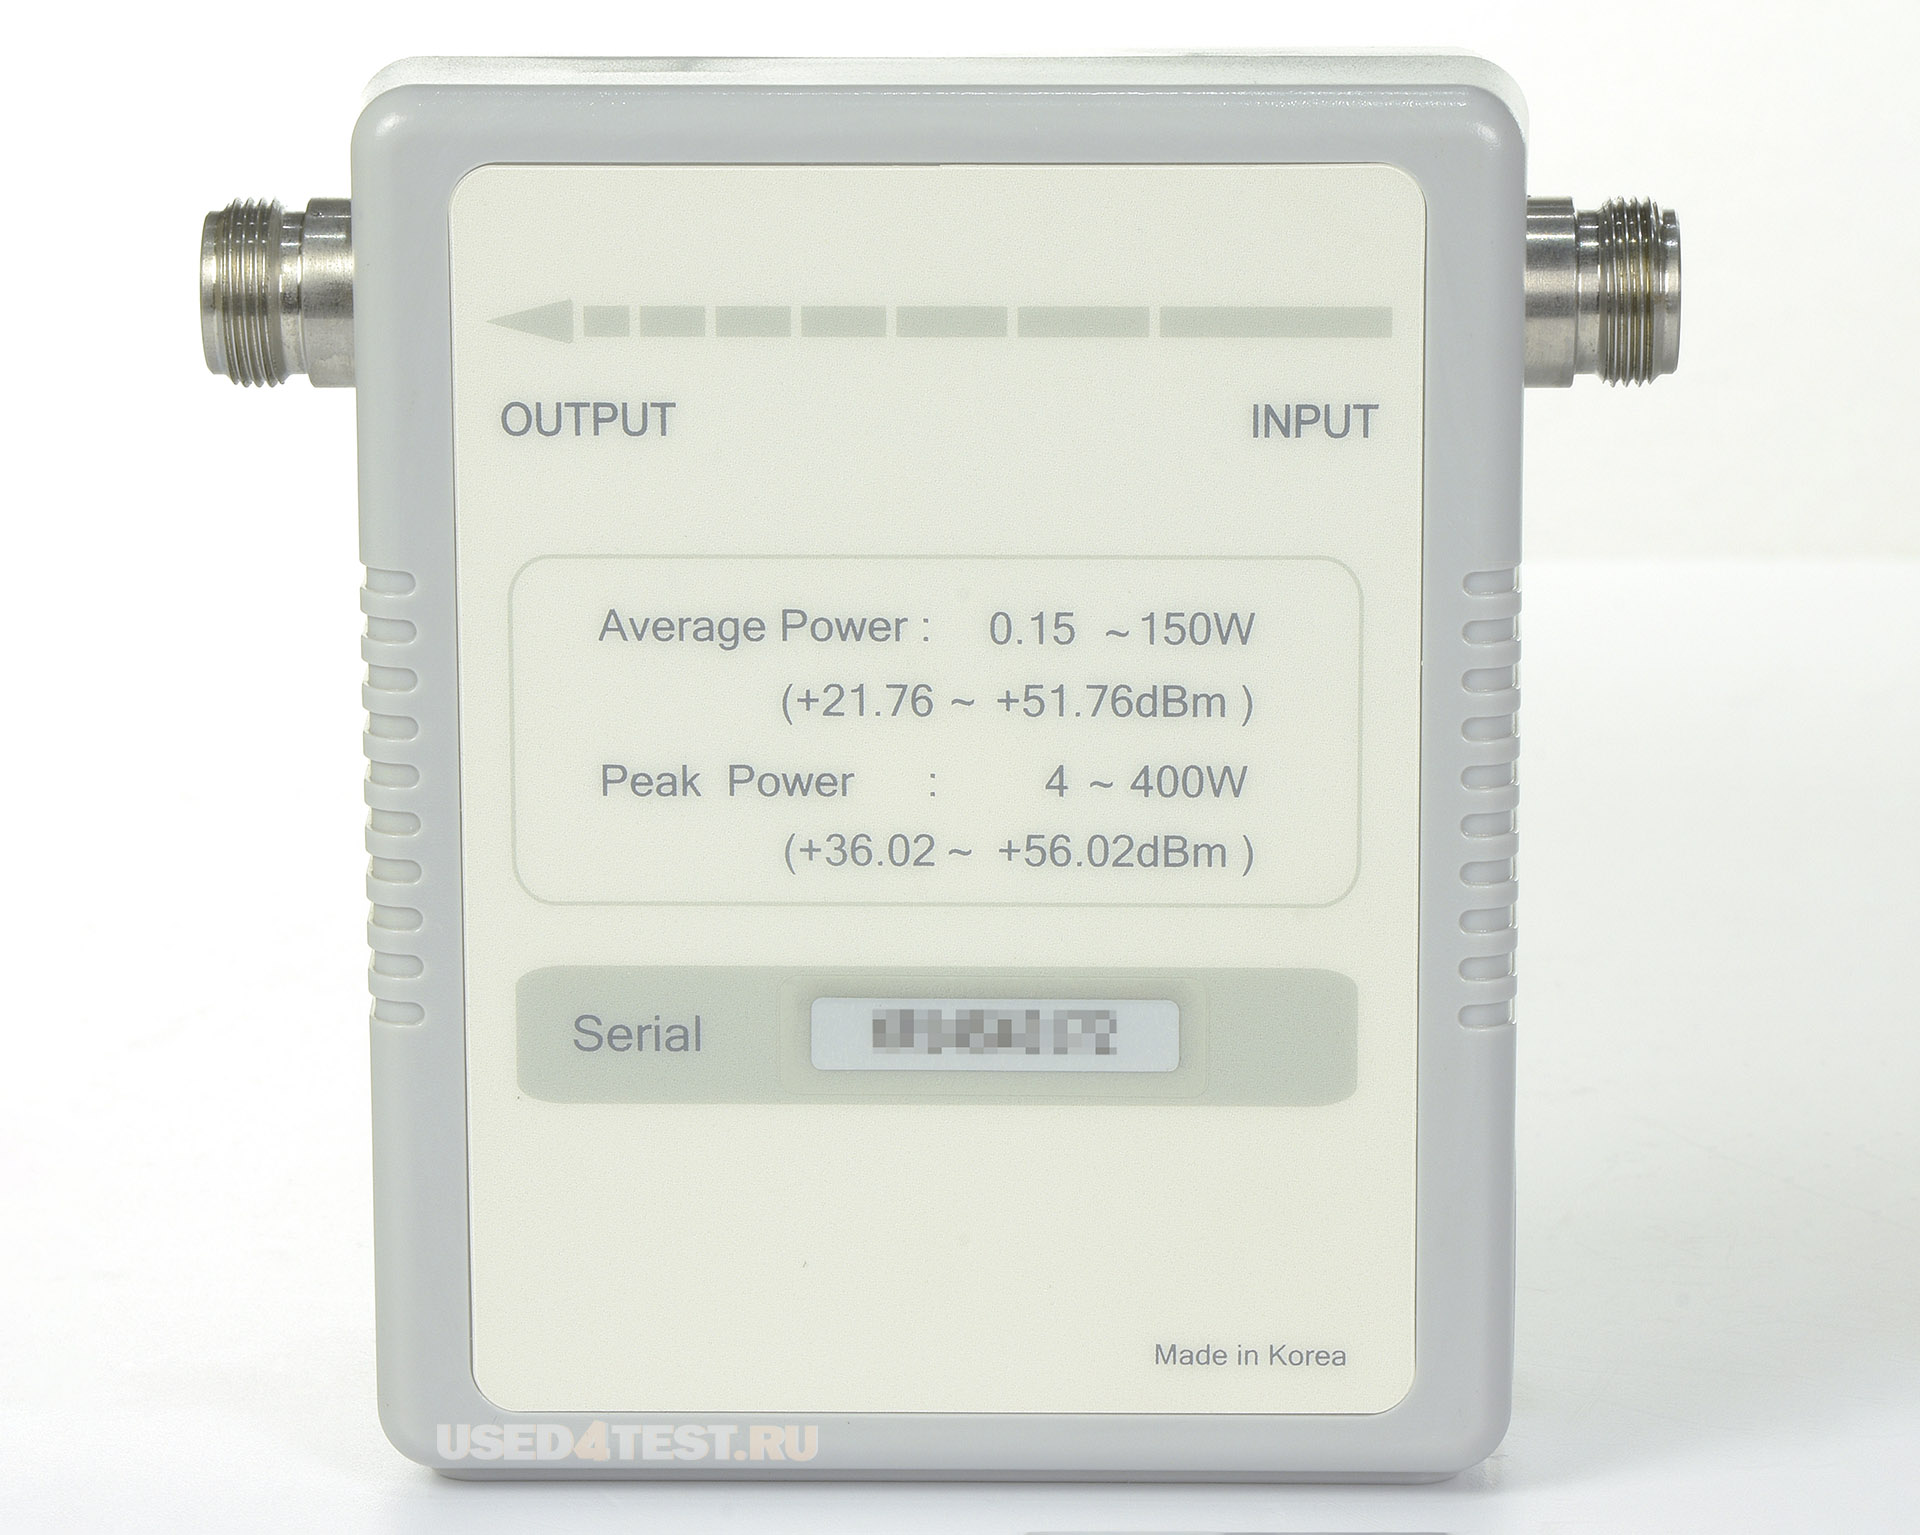 Анализатор антенно-фидерных устройств (АФУ)JDSU JD724C с диапазоном от 5 МГц до 4 ГГц


 В комплекте: 


JDSU JD724C — Анализатор АФУ
	JDSU JD731B — Датчик мощности
	JDSU JD72450509 — Набор для калибровки, 40 дБ, 4 ГГц (OPEN-SHORT-LOAD)
Mini Circuits CBL-1M-NMNM+ — Прецизионный испытательный кабель (разъемы N-Male)
JD72050541 — Мягкая переносная сумка
JD70050542 — Жёсткий переносной кейс
GC72450523 — Адаптер питания 12V DC от автомобильного прикуривателя


 

 Стоимость указана в Рублях DDP Москва по безналичному расчету без НДС
